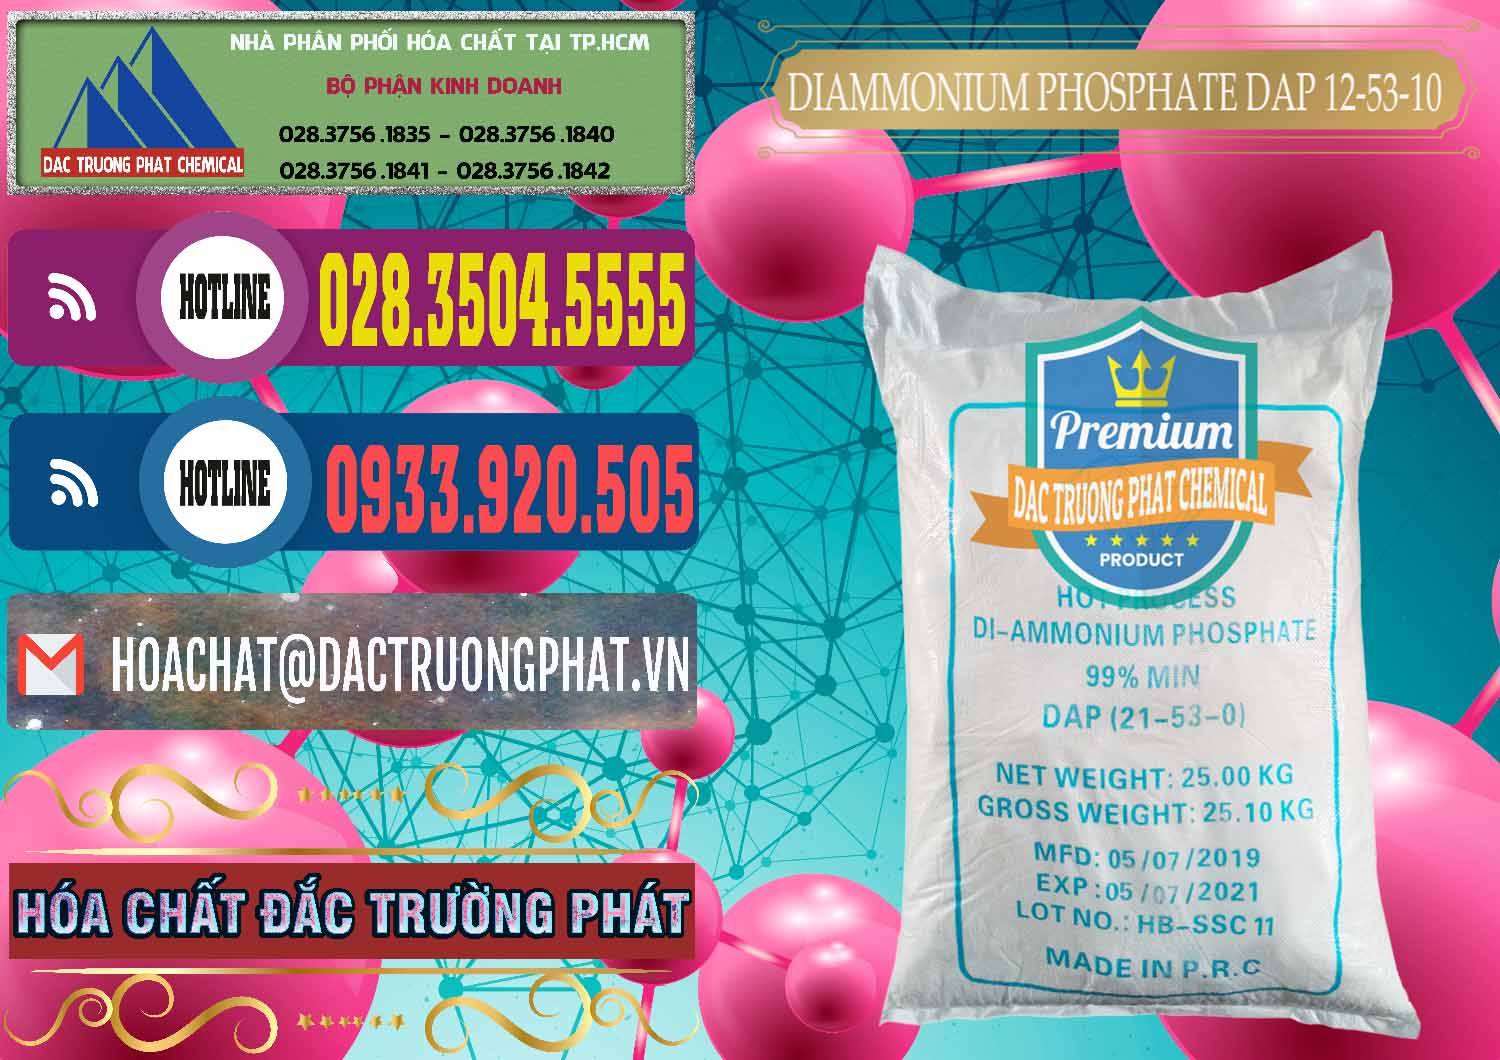 Cty bán _ phân phối DAP - Diammonium Phosphate Trung Quốc China - 0319 - Cty chuyên nhập khẩu & cung cấp hóa chất tại TP.HCM - muabanhoachat.com.vn